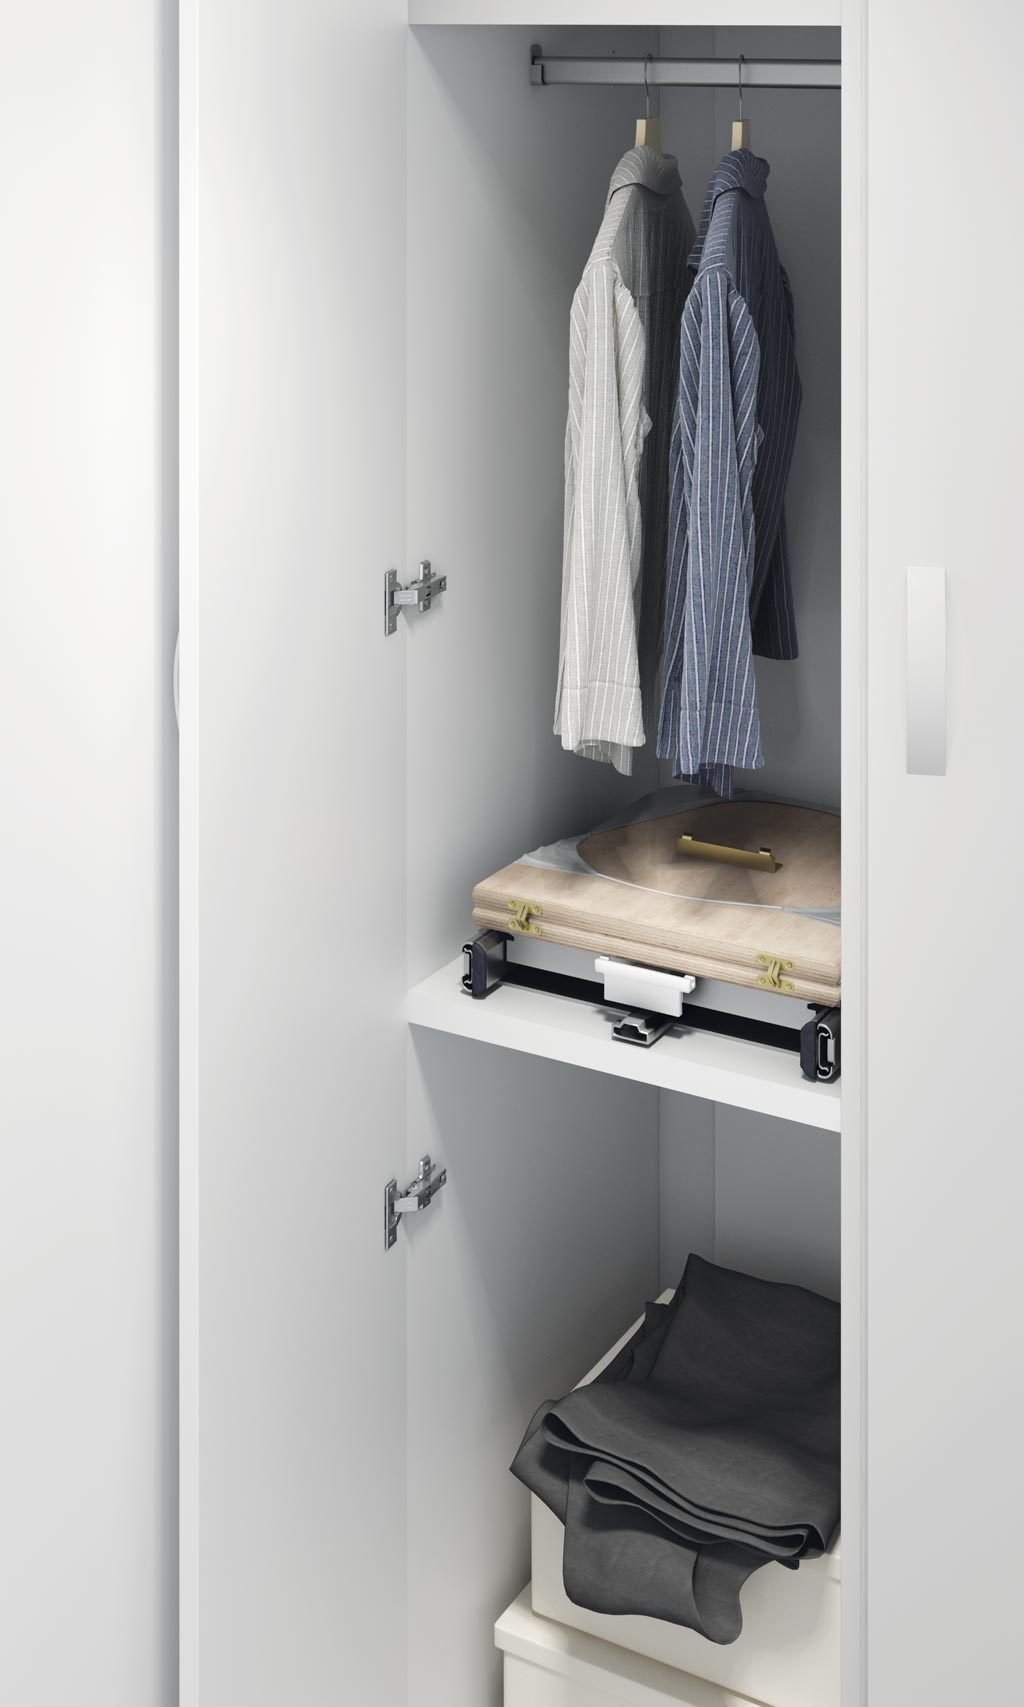 Tabla de planchar plegada dentro armario